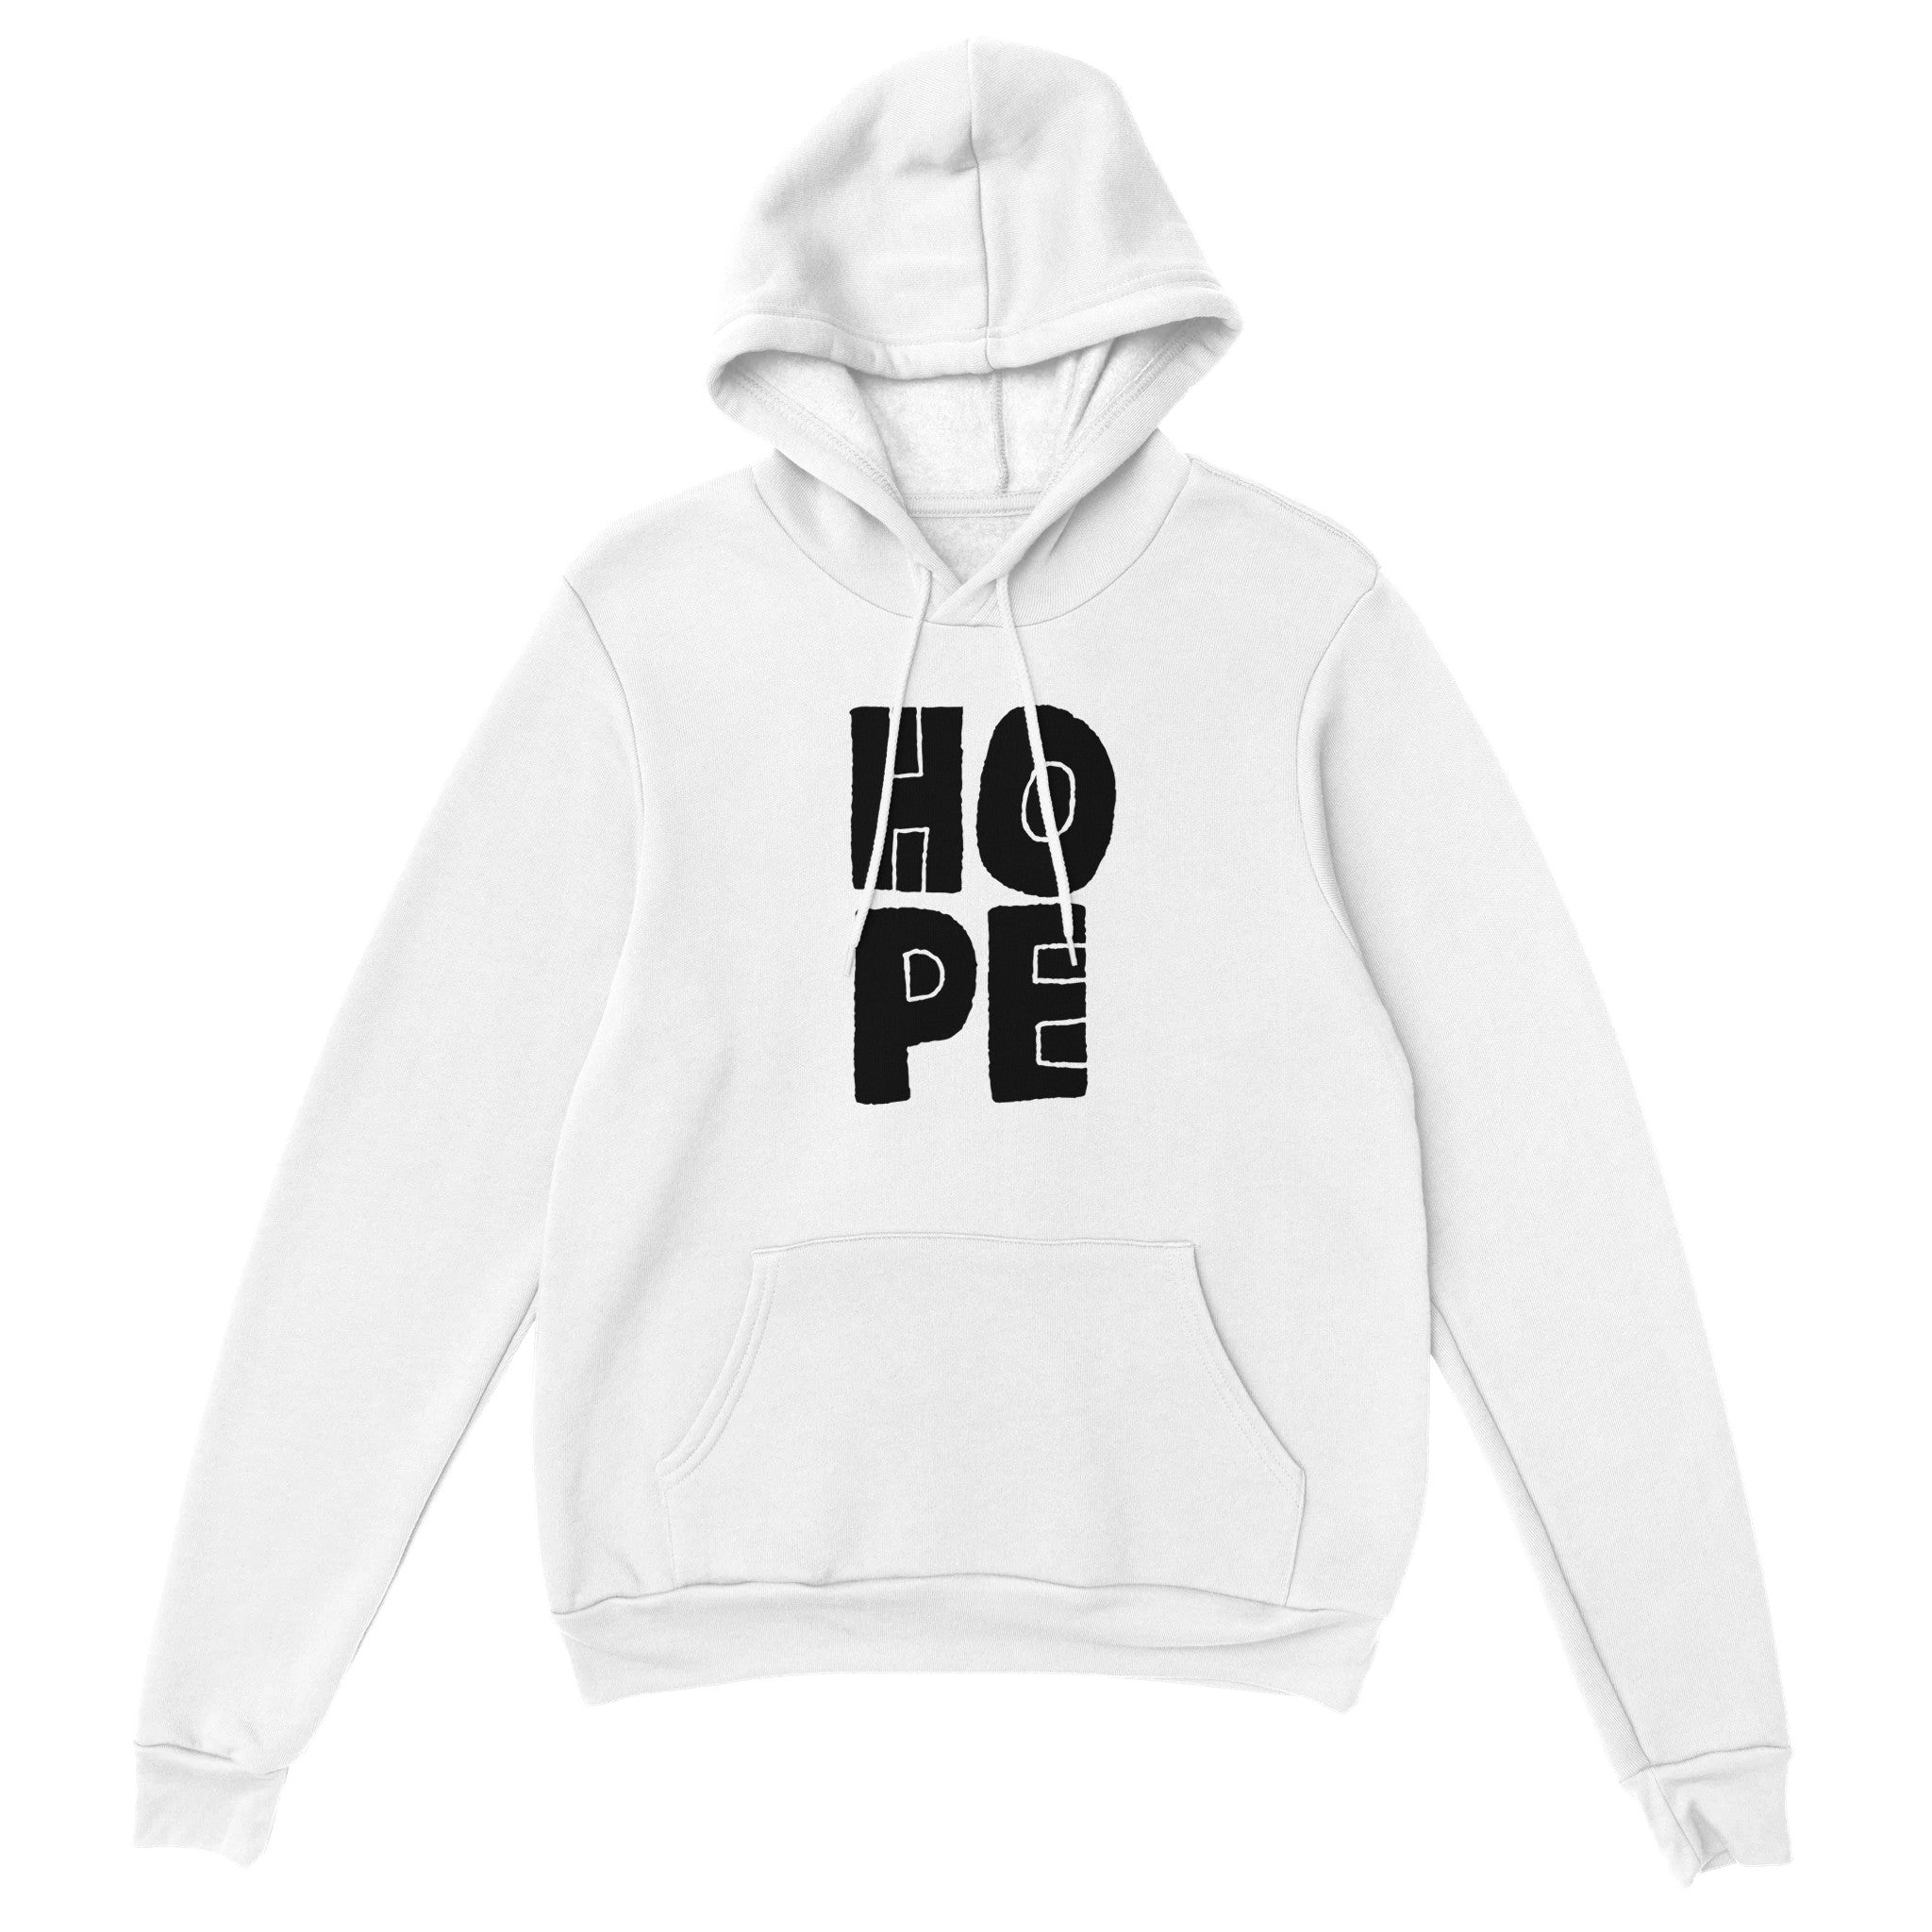 HOPE Pullover Hoodie - Optimalprint